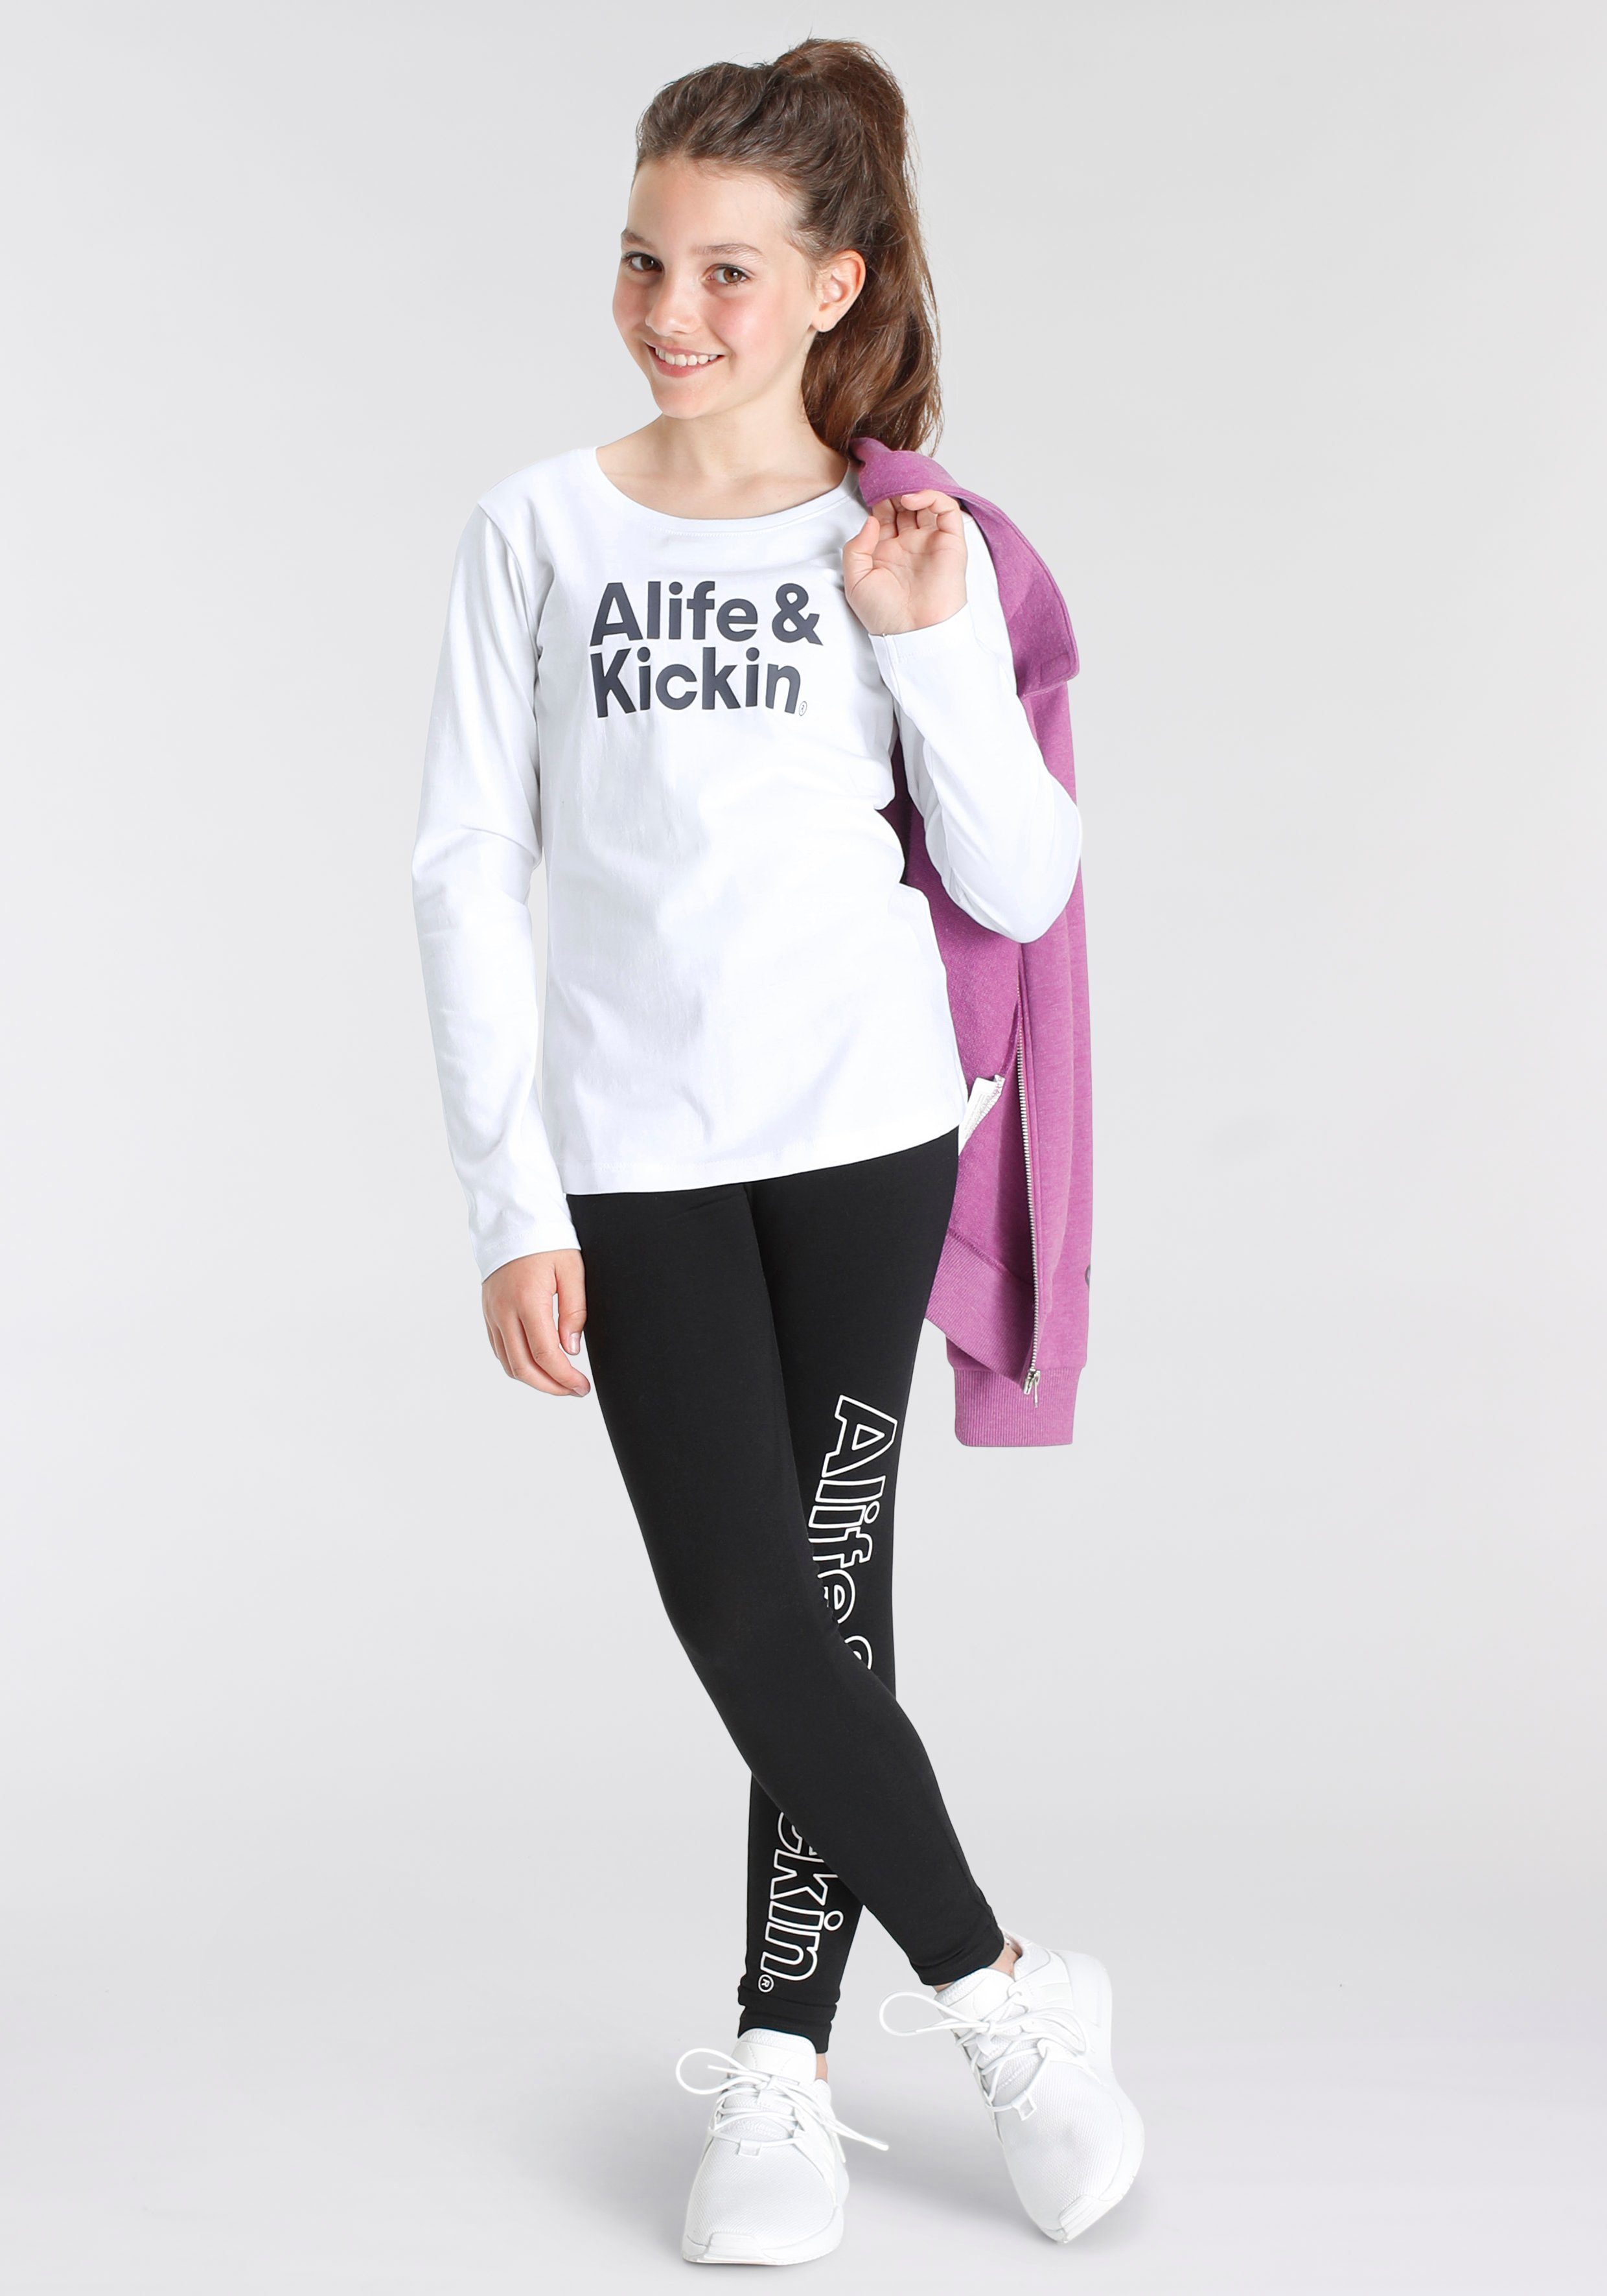 Kids. Langarmshirt Logo Kickin NEUE für MARKE! & Alife Druck Alife & Kickin mit